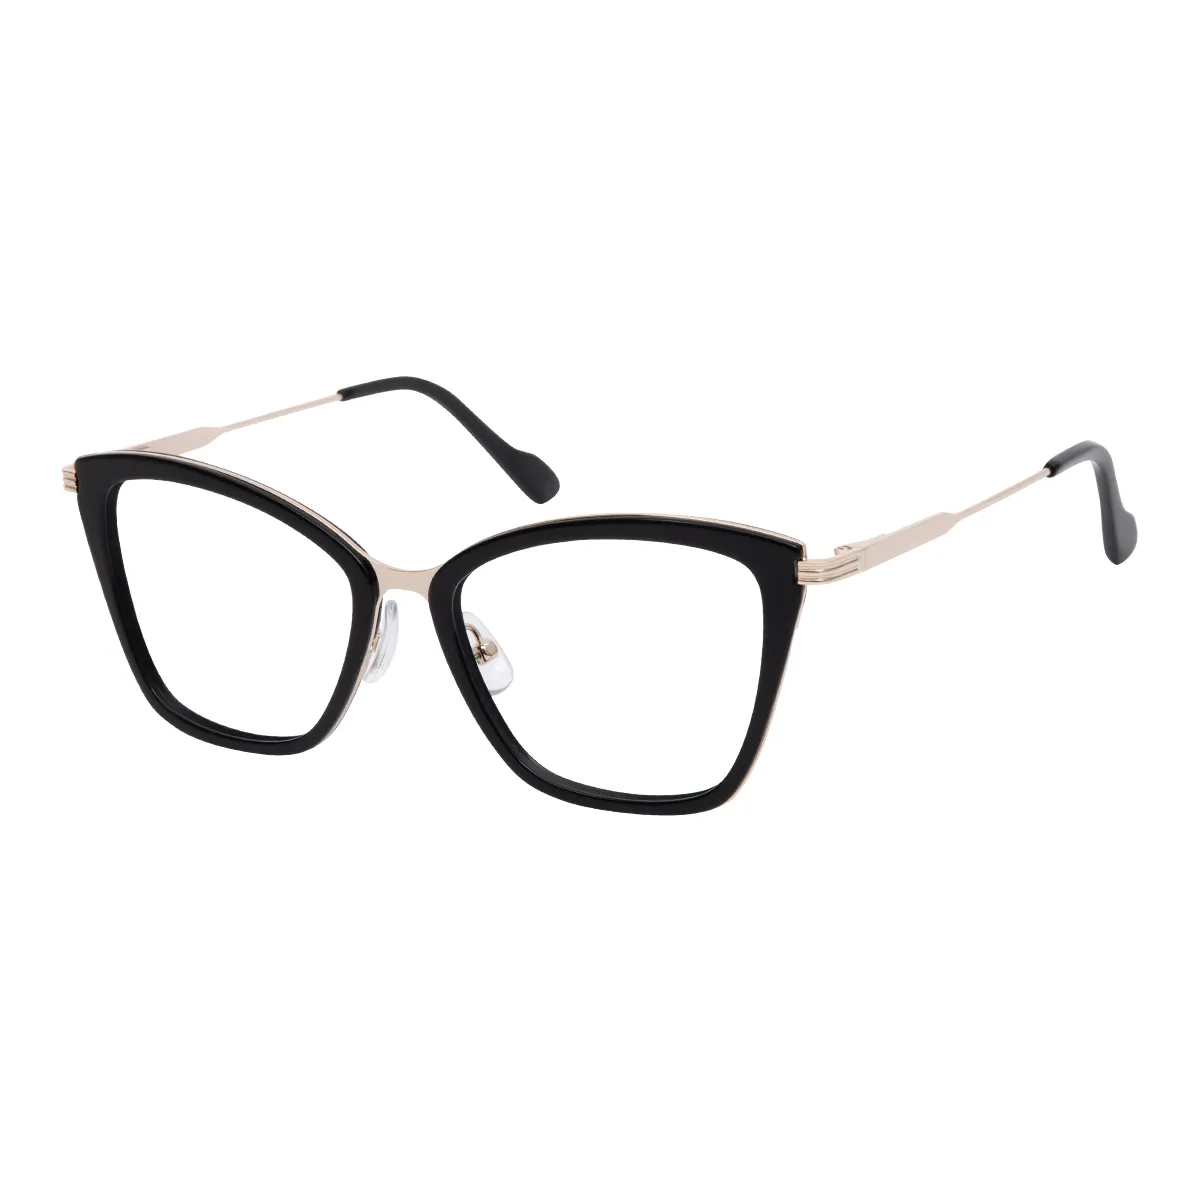 Henry - Cat-eye Black-Gold Glasses for Women